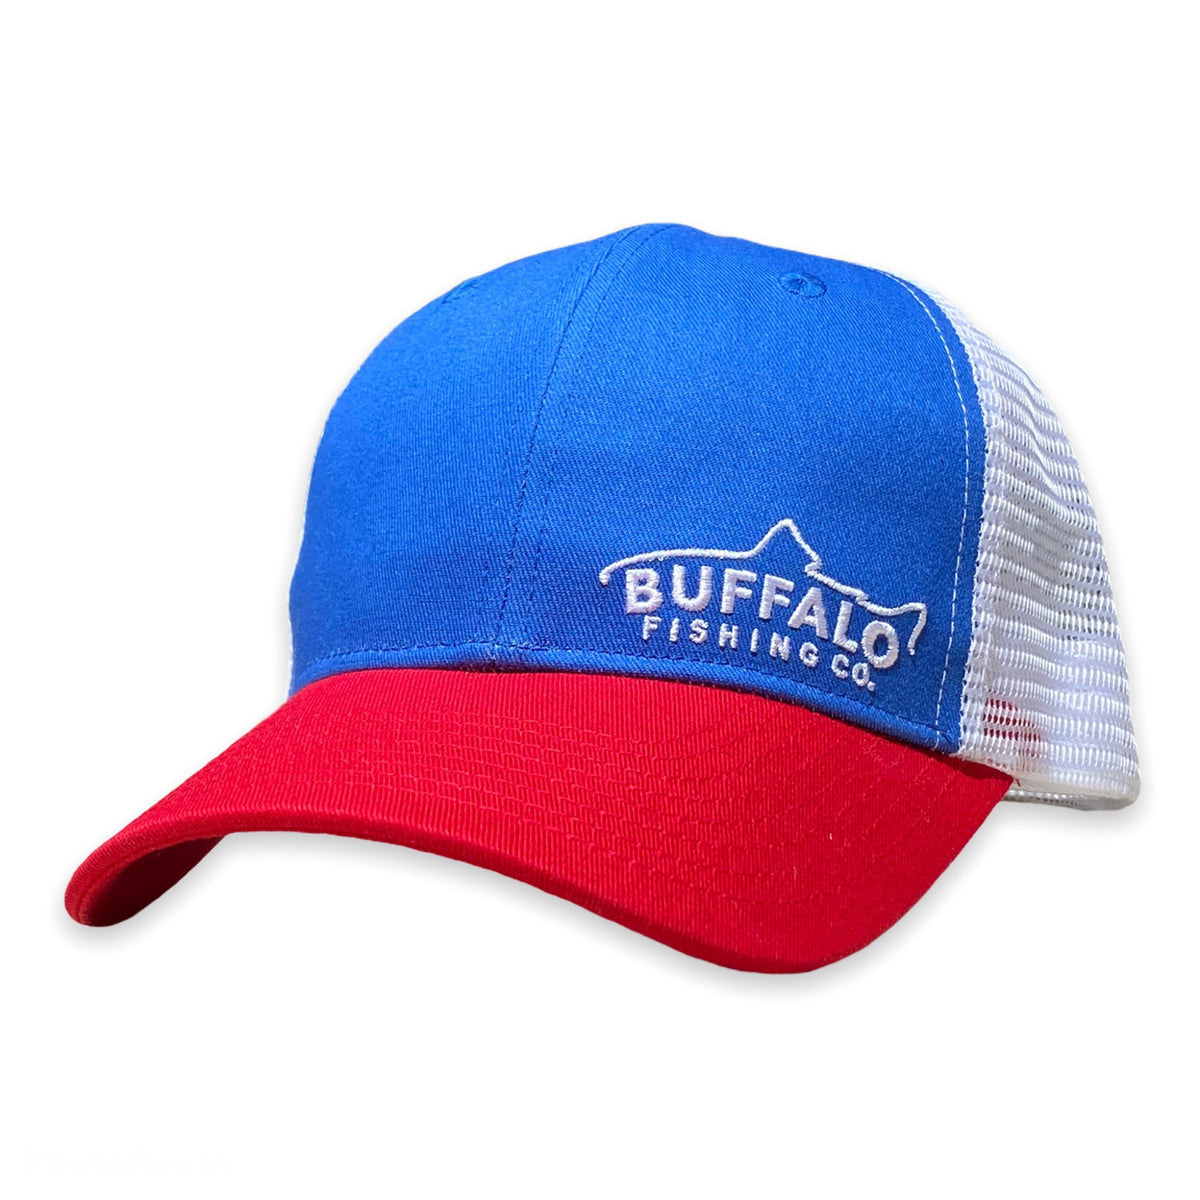 Buffalo Tricolor - Blue / Red / White – Fish Local